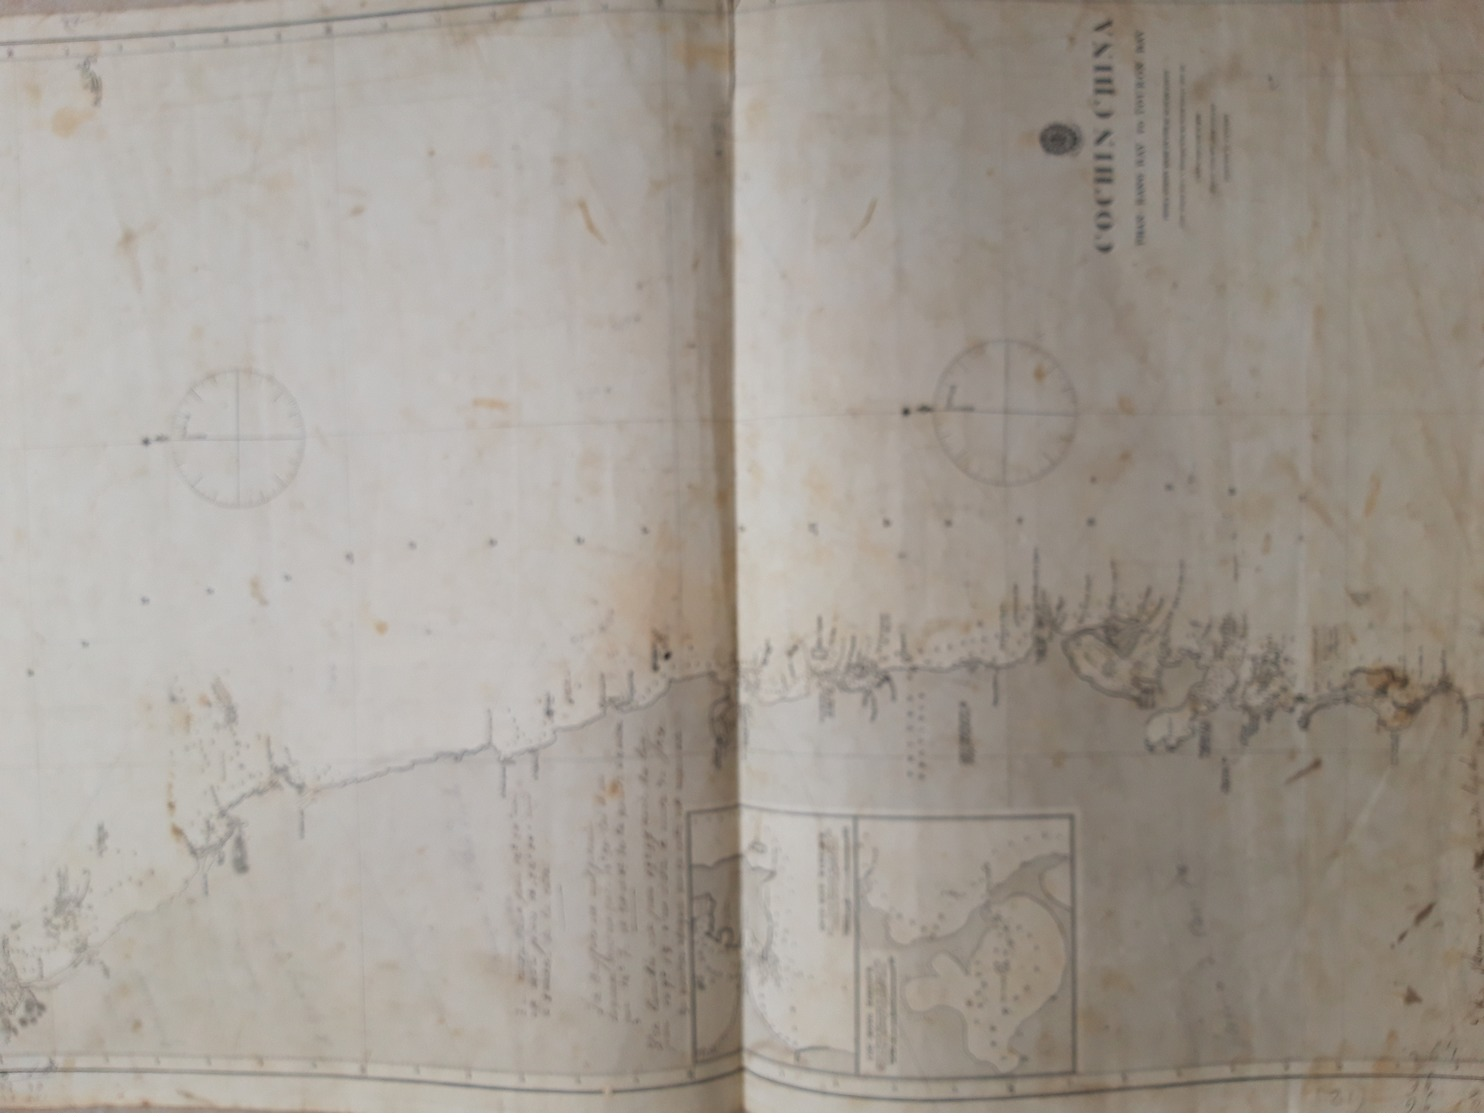 Carte Marine Rare Map Charts. "Cochinchina" 1840 Correction 1871. 72cm/48 Map Dépôt Général De La Marine - Cartes Marines